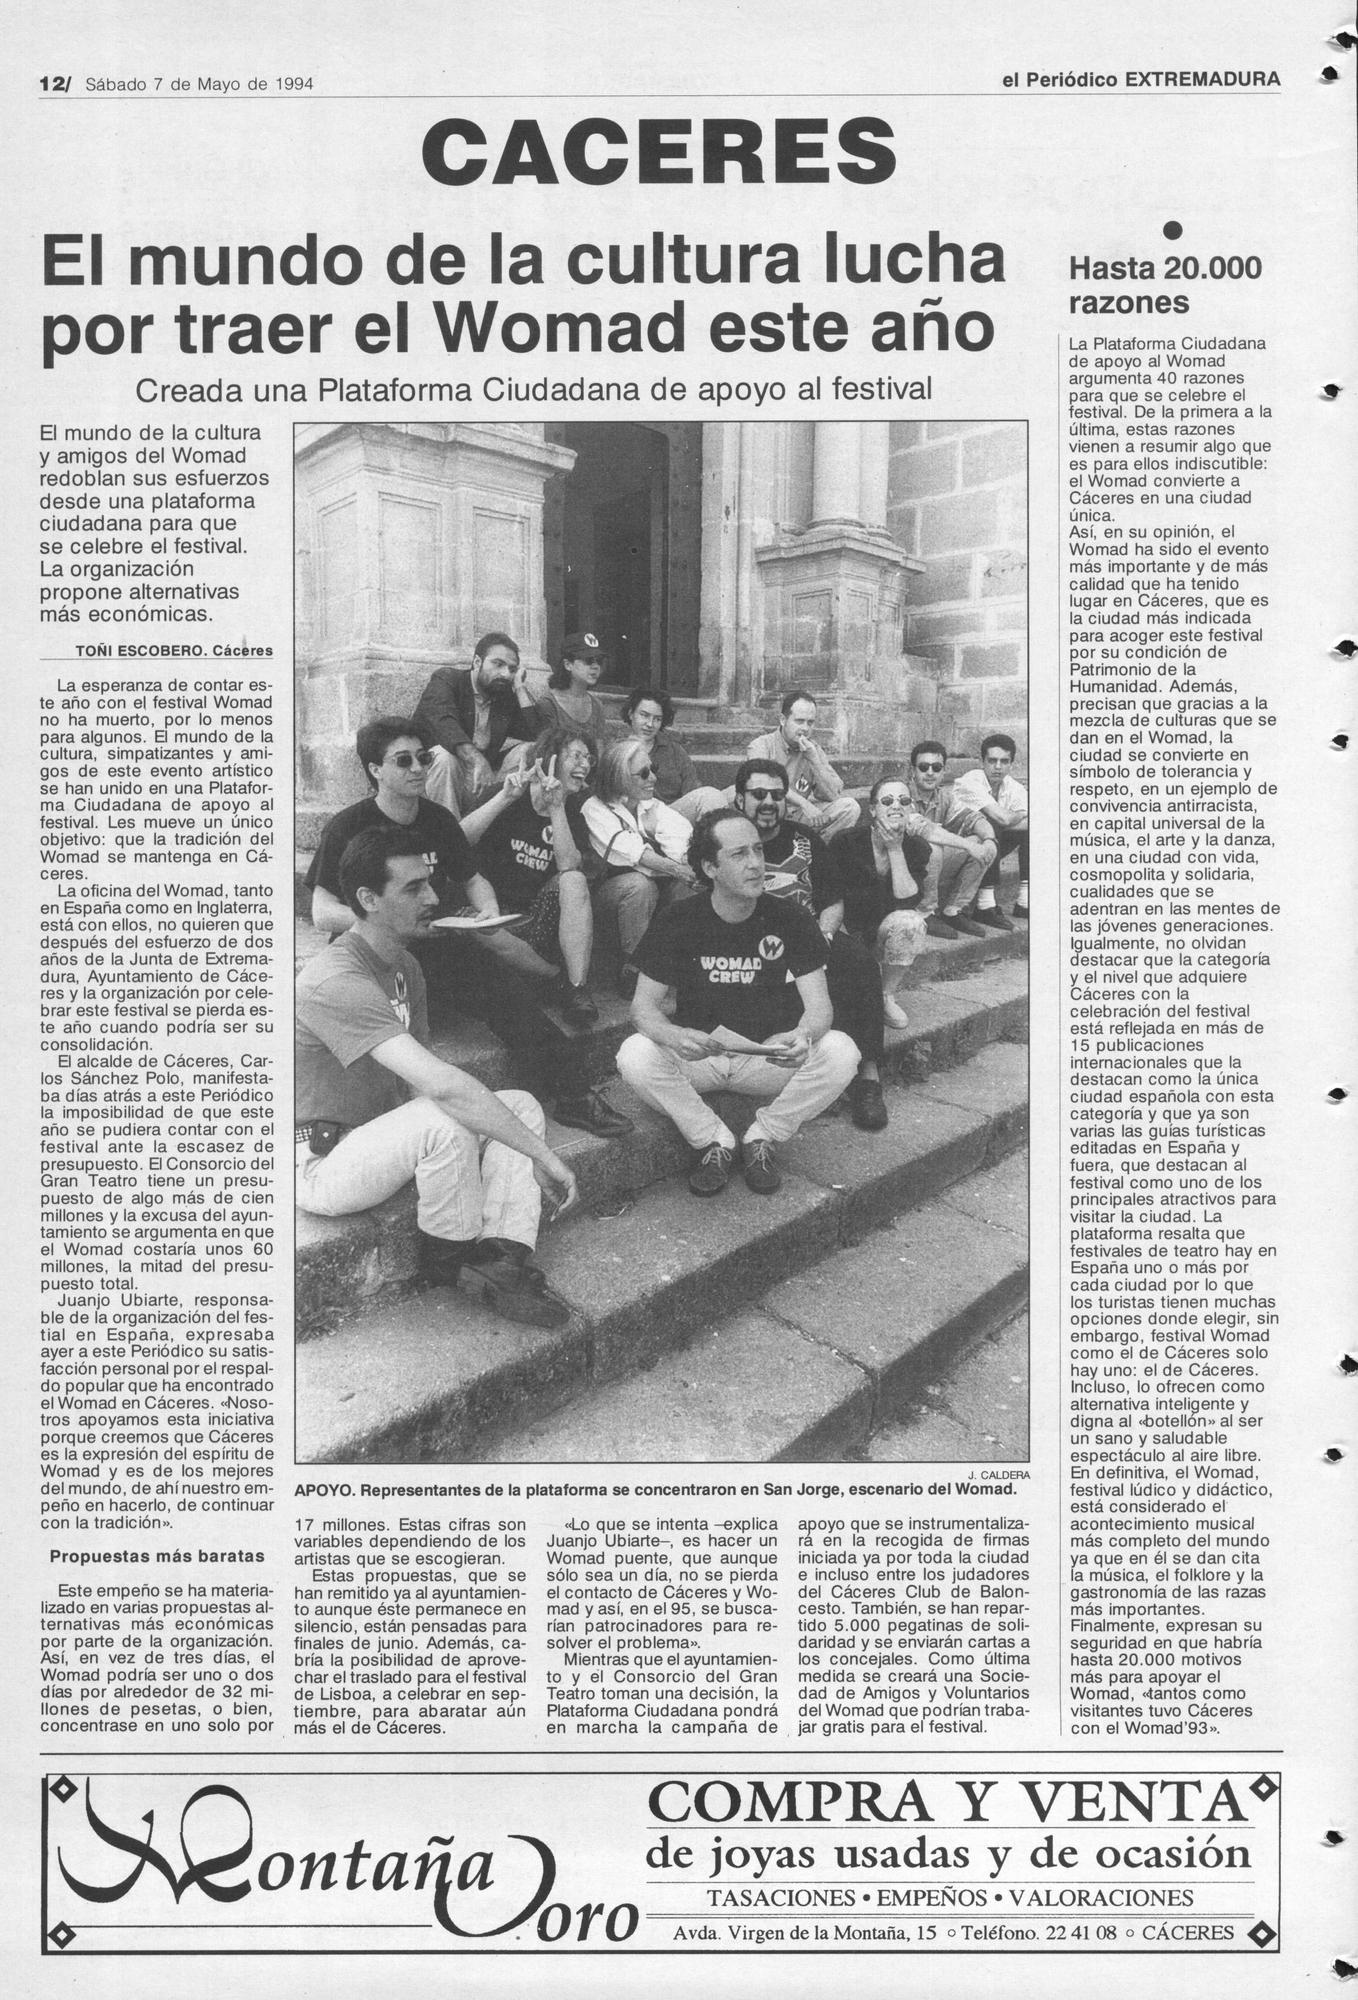 Página de El Periódico Extremadura el 7 de mayo de 1994.